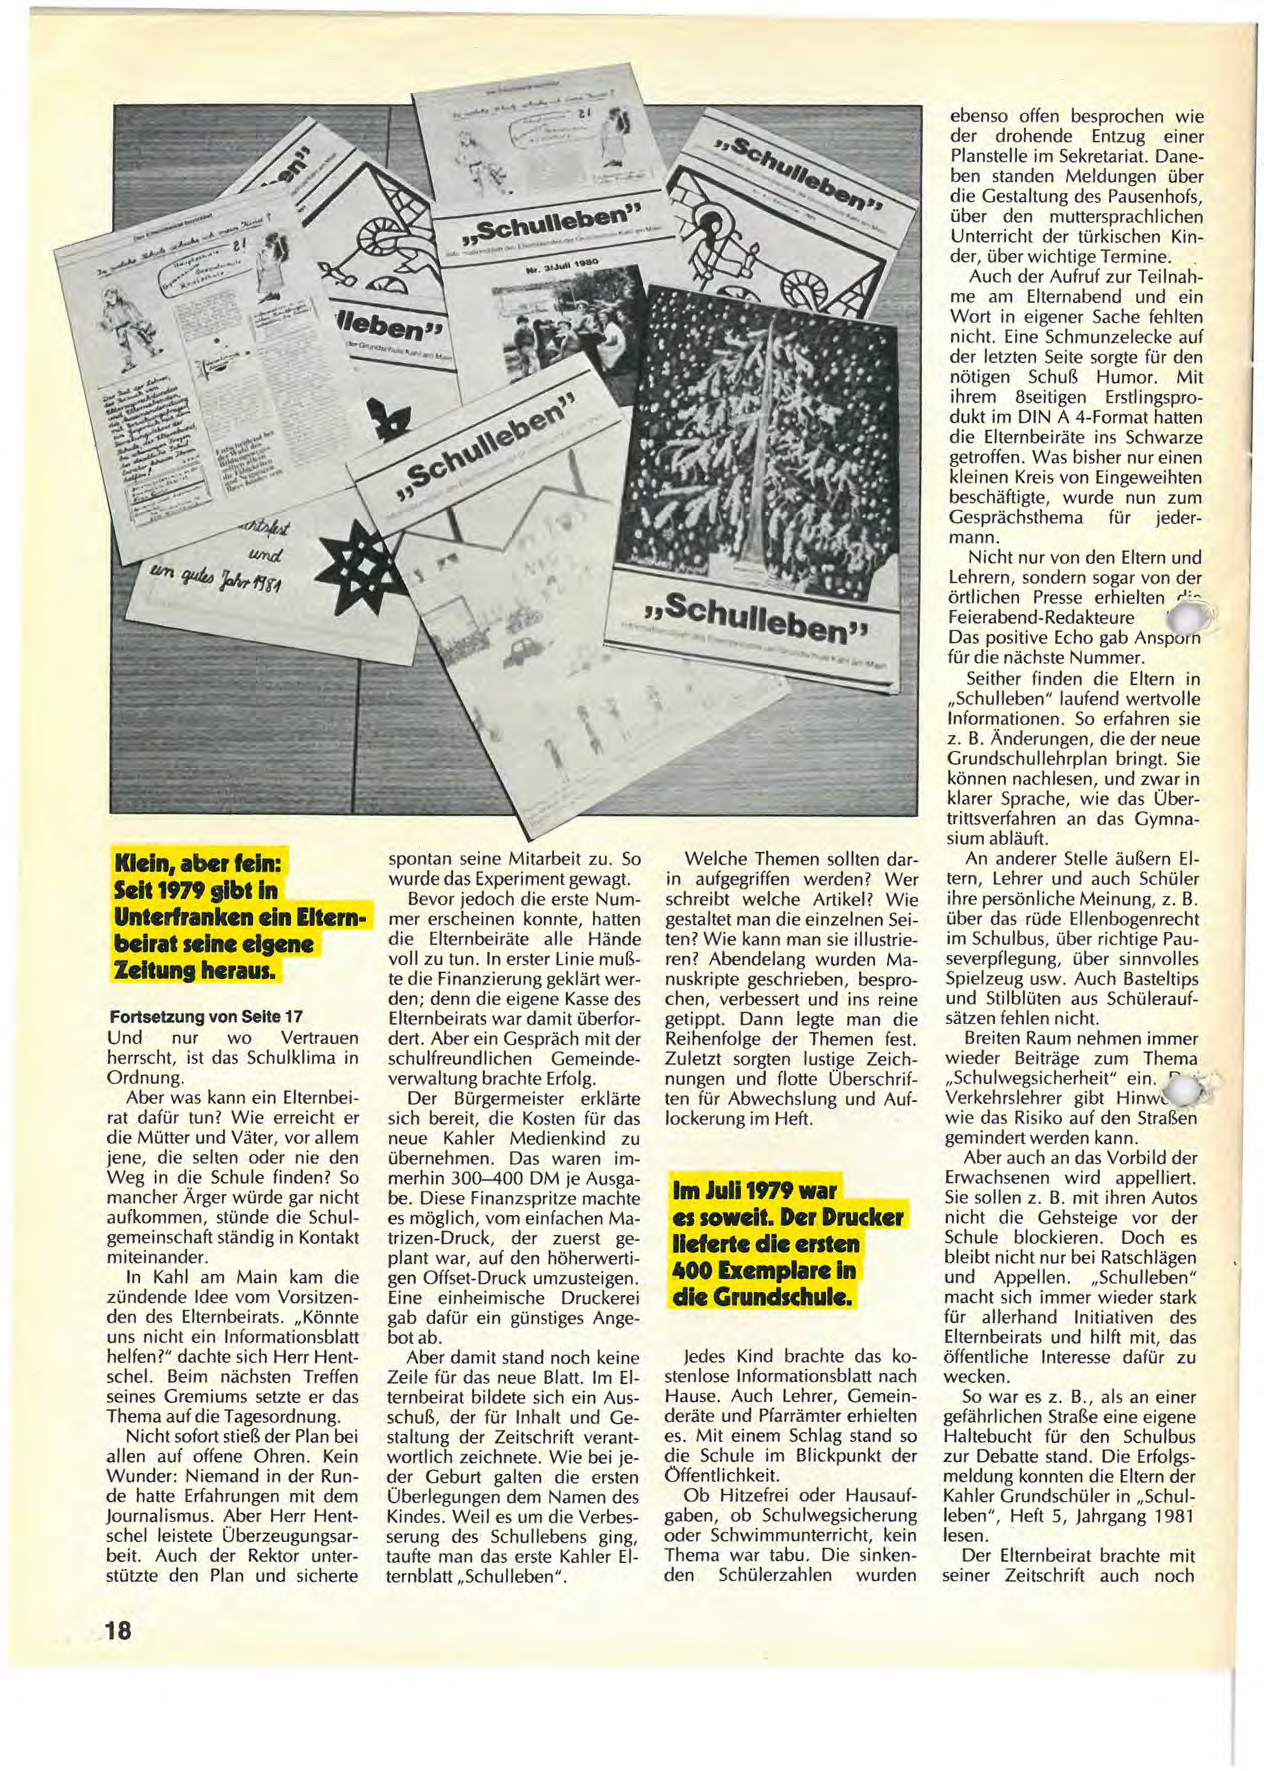 Klein, aber fein: Seit 1979 gibt ln Unterfranken ein Ellern belrat seine eigene Zeitung heraus. Fortsetzung von Seite 17 Und nur wo Vertrauen herrscht, ist das Schulklima in Ordnung.